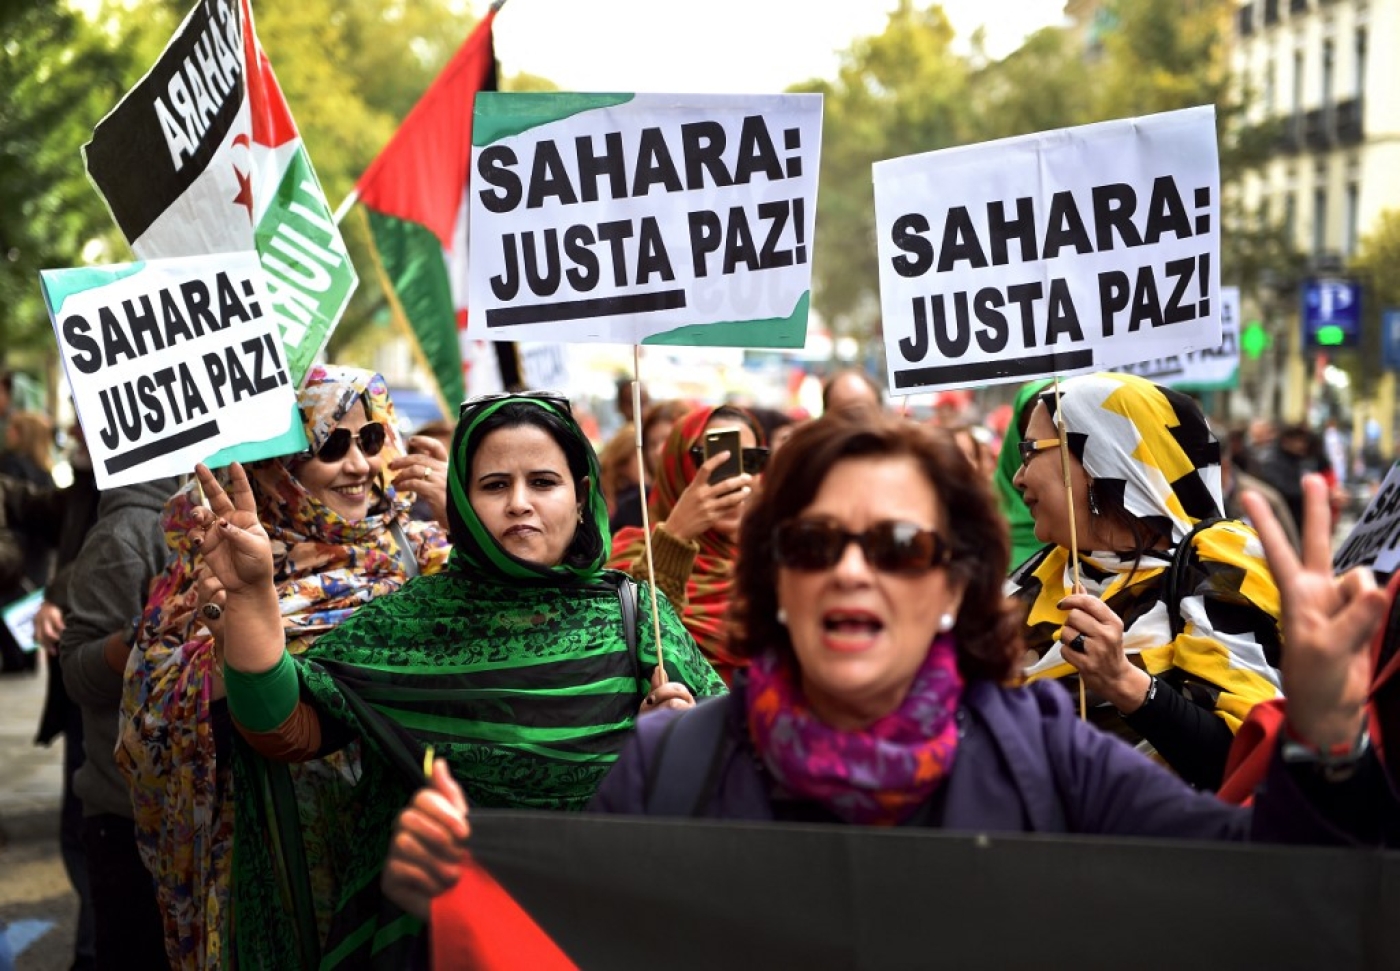 Des militants pour l’indépendance du Sahara occidental agitent des drapeaux et des banderoles lors d’une manifestation à Madrid en 2016 (AFP/Gérard Julien)